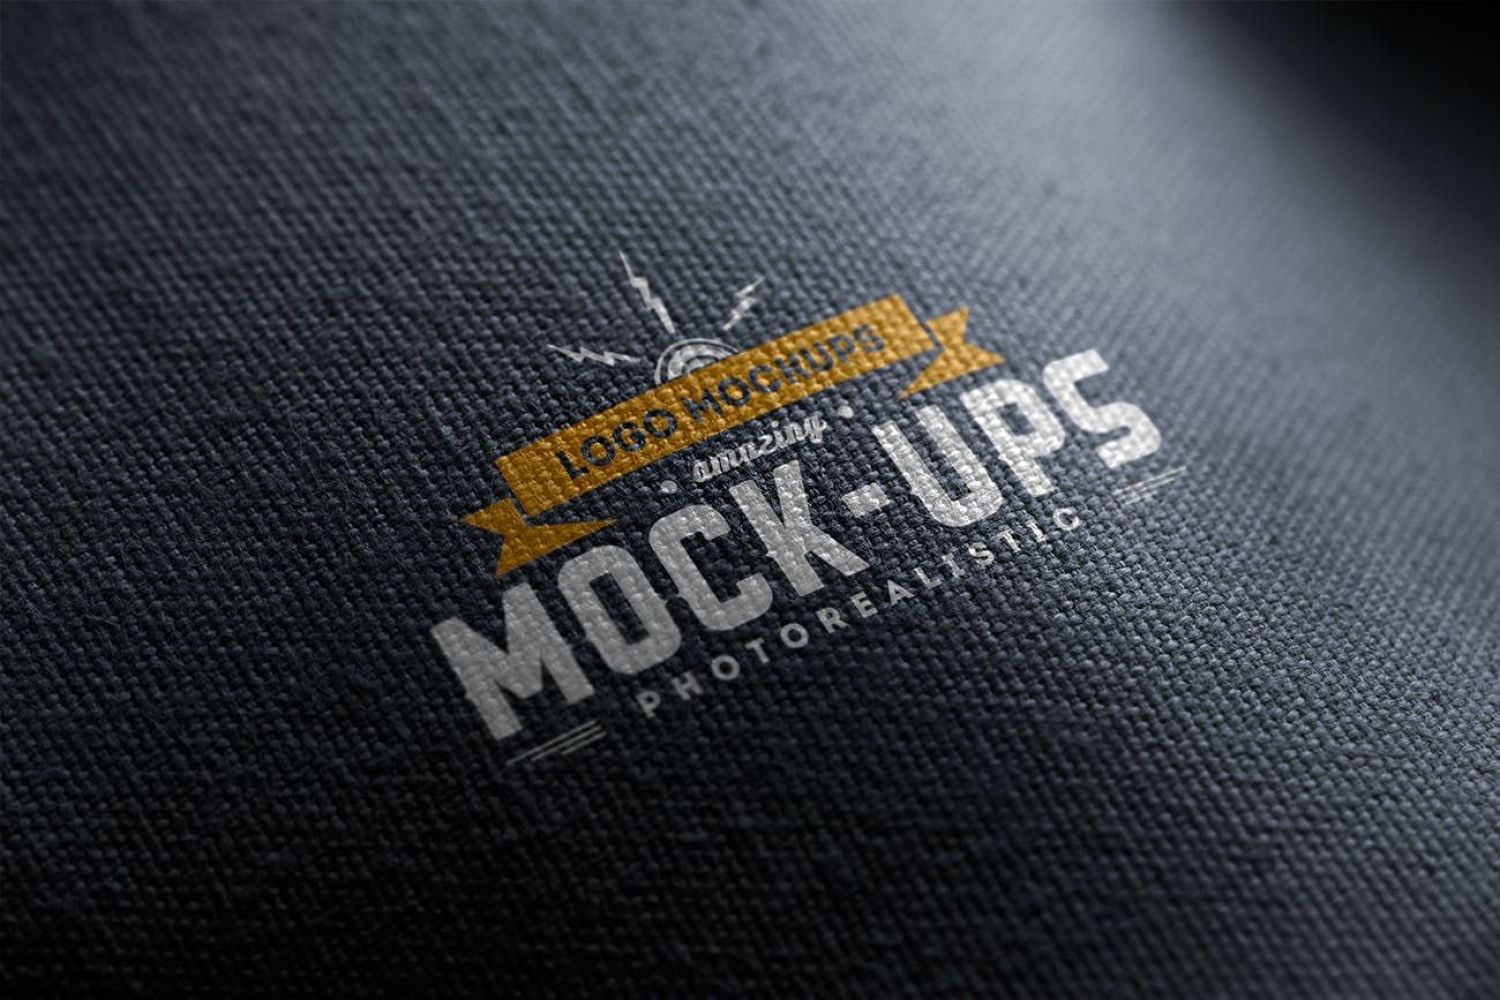 Logo样机 Vol.1 Logo Mock-Ups Vol.1插图3